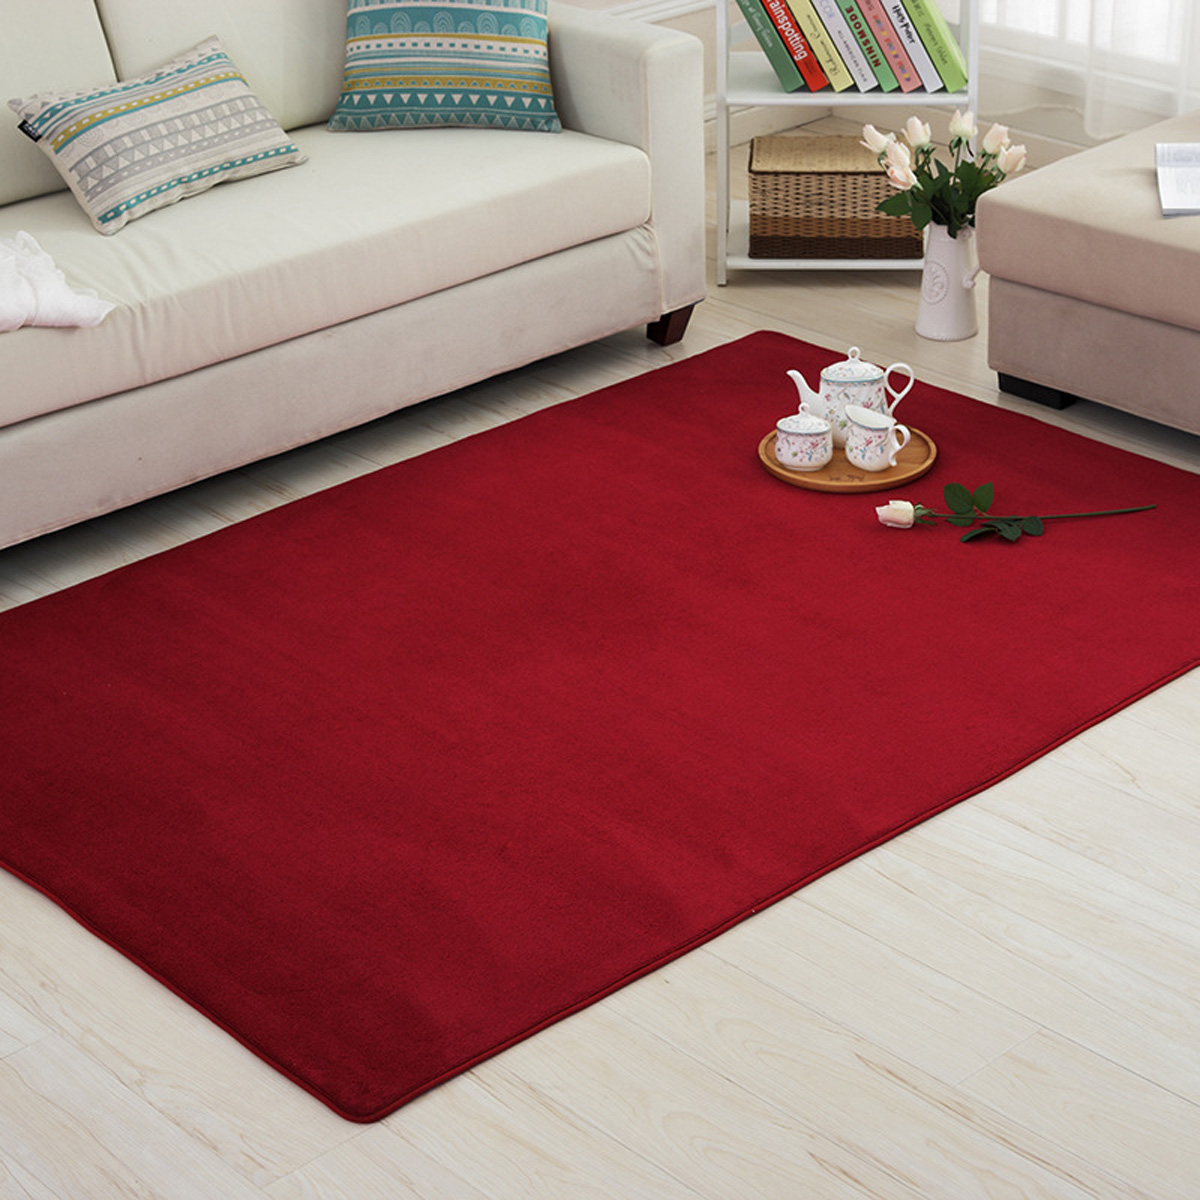 4-Sizes-Carpet-Modern-Living-Room-Area-Carpet-Bedroom-Bedside-Rug-Home-Decoration-1637671-2